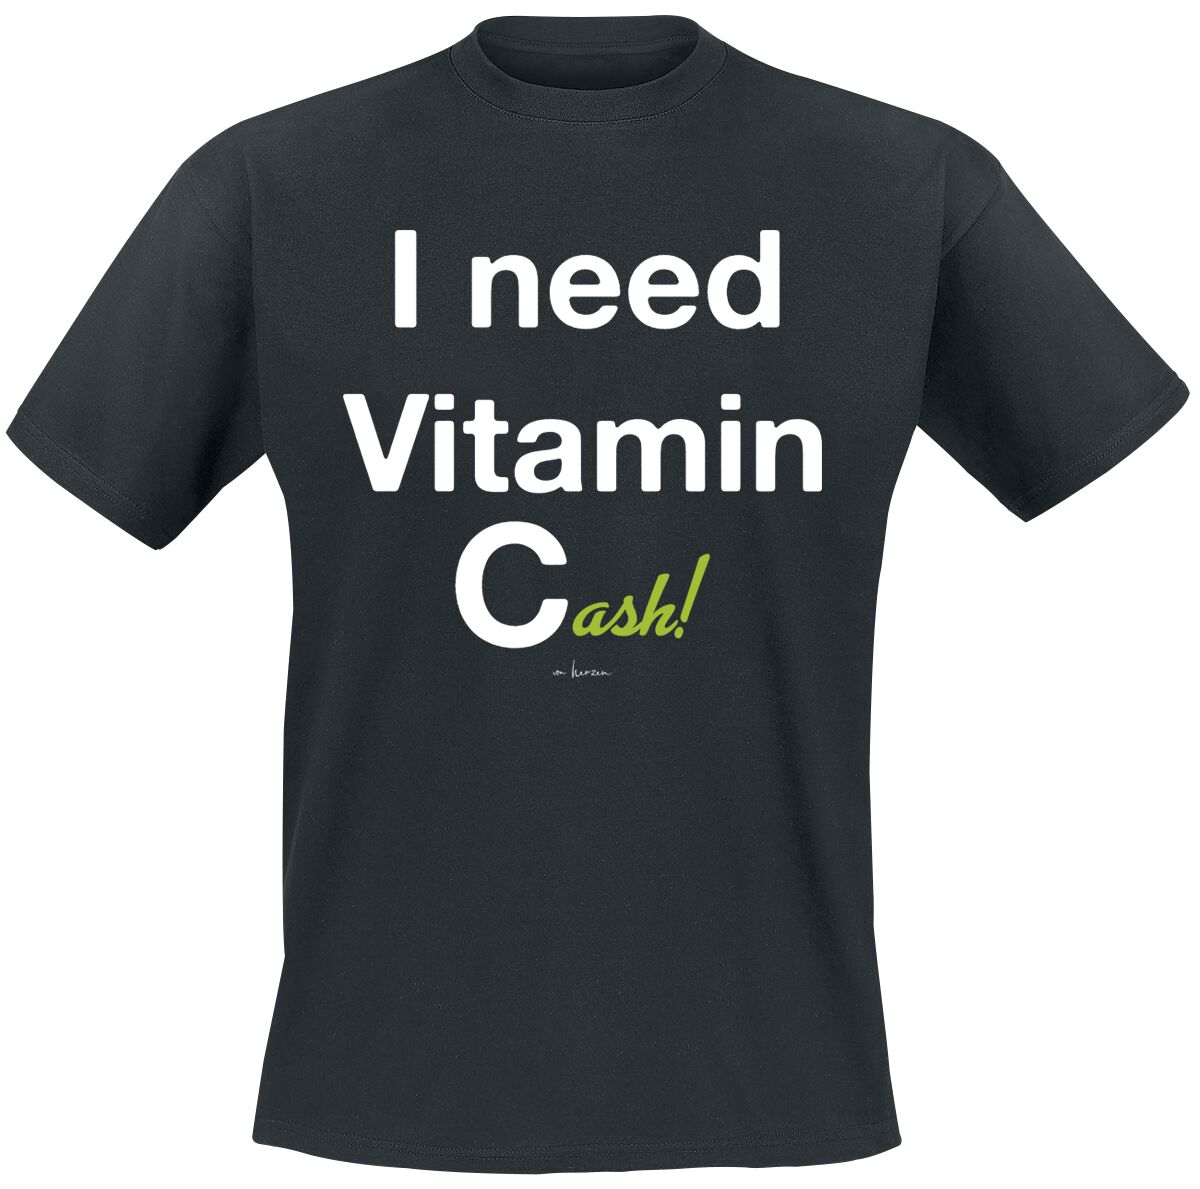 Sprüche T-Shirt - I Need Vitamin Cash! - M bis 3XL - für Männer - Größe M - schwarz